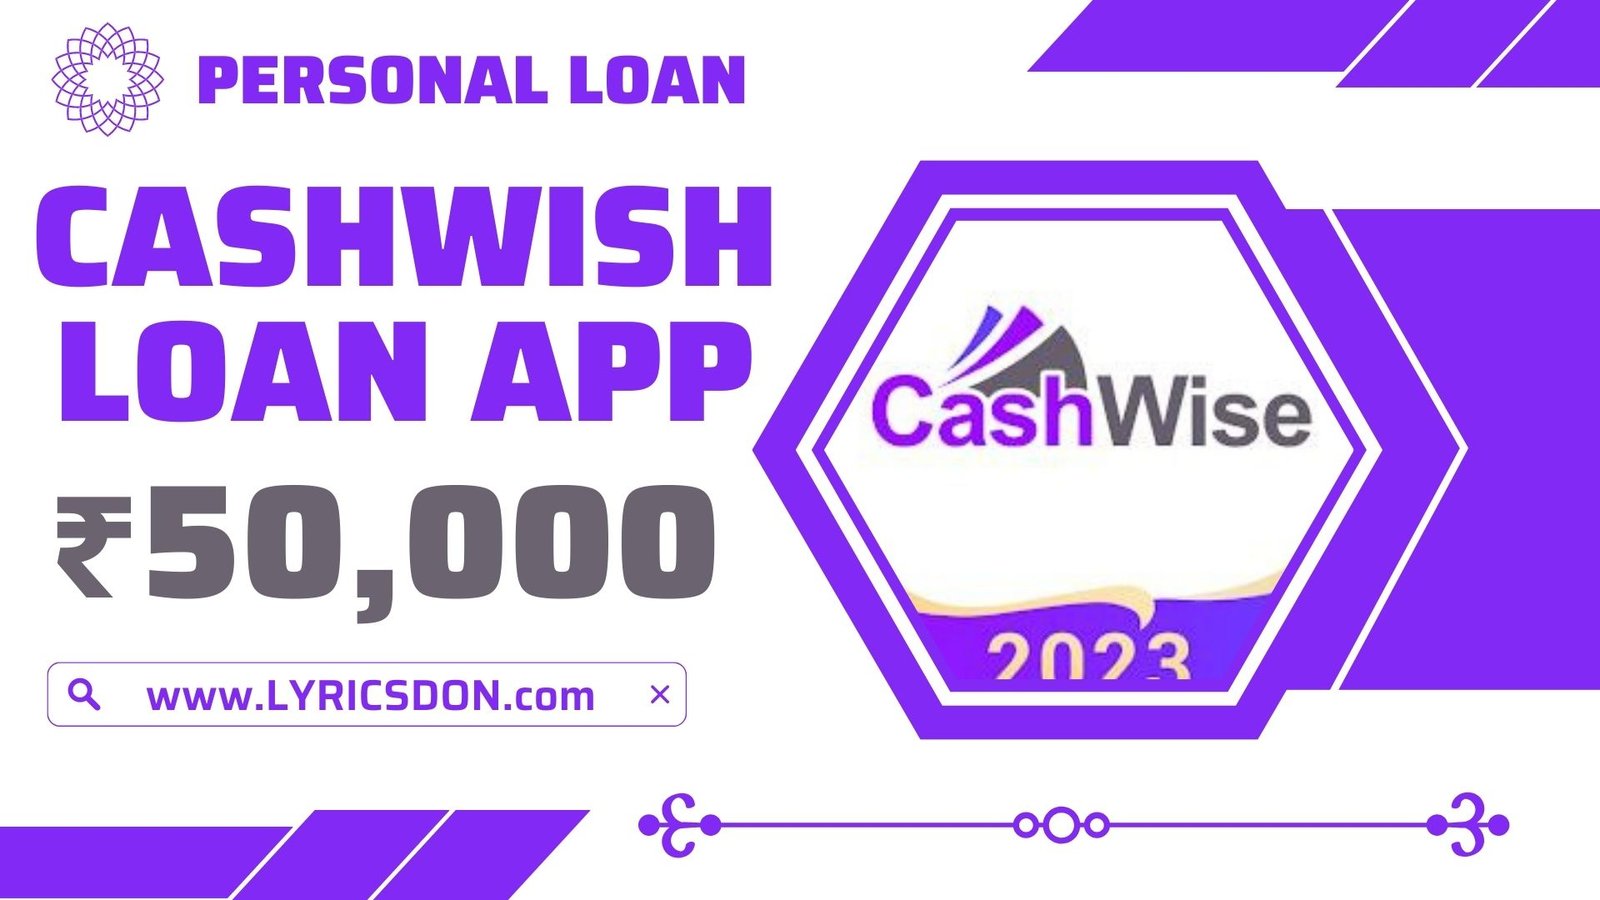 CashWise Loan App Loan Amount